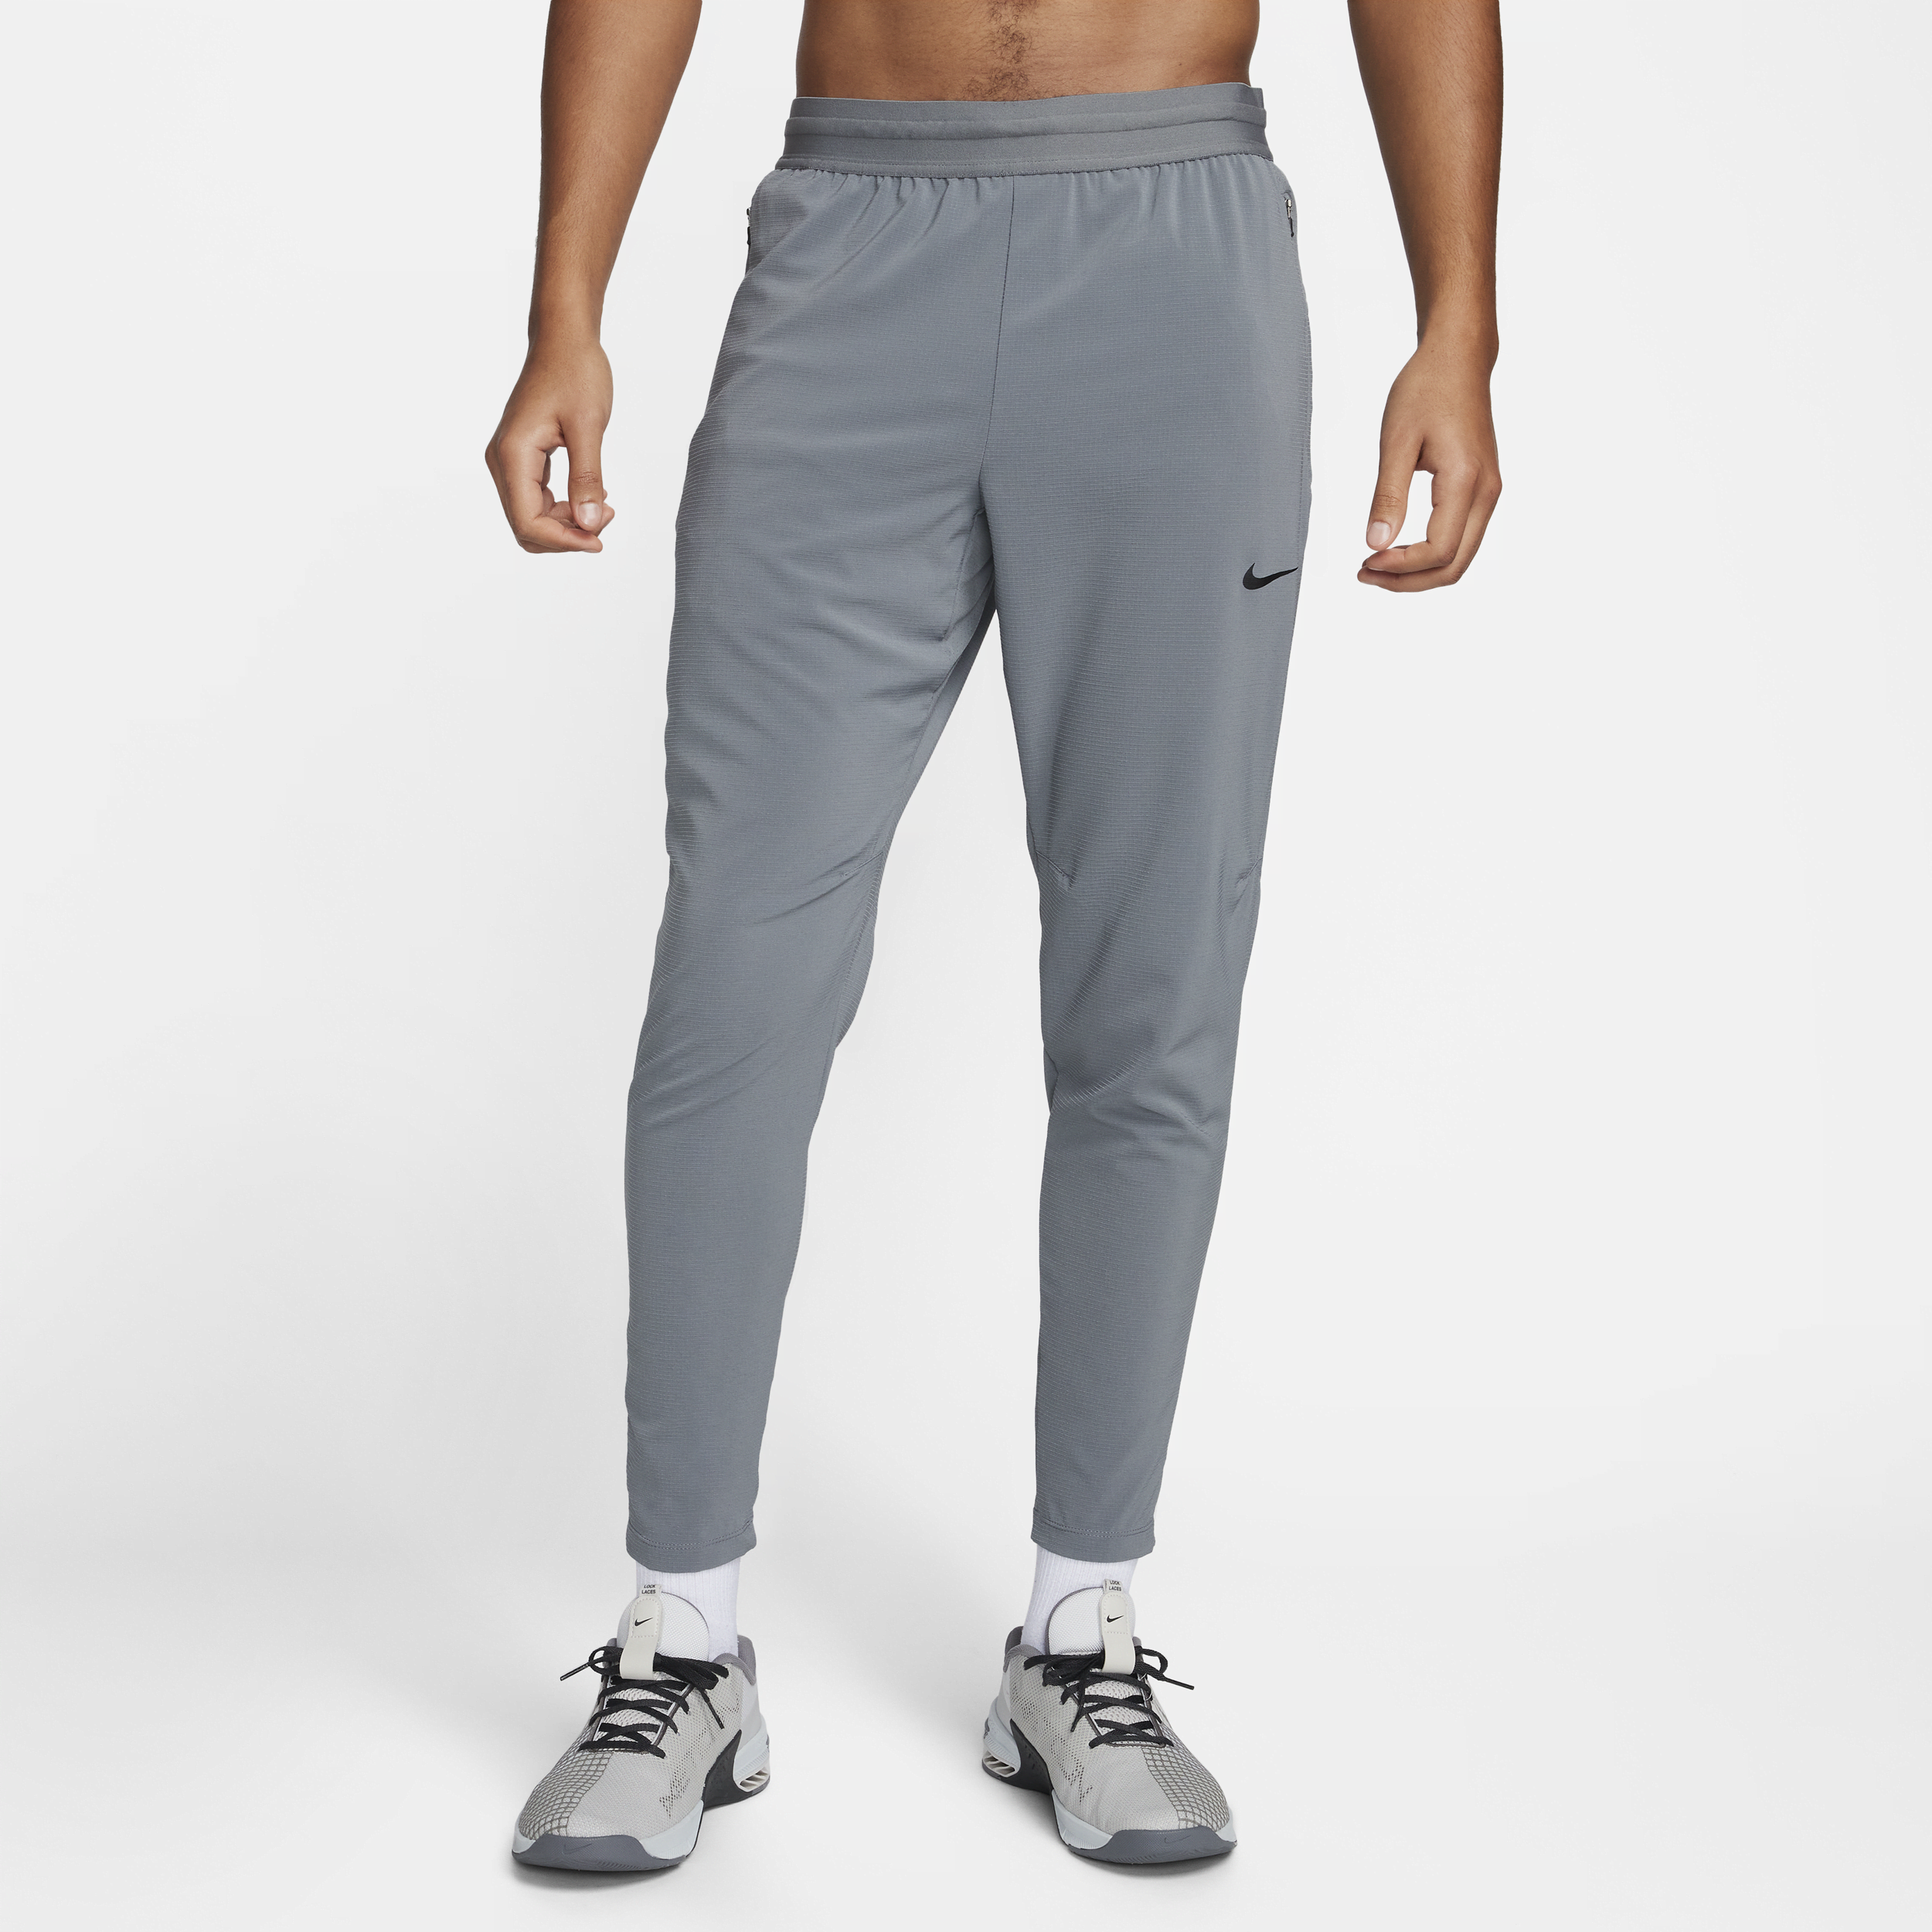 Pantaloni da fitness Dri-FIT Nike Flex Rep – Uomo - Grigio